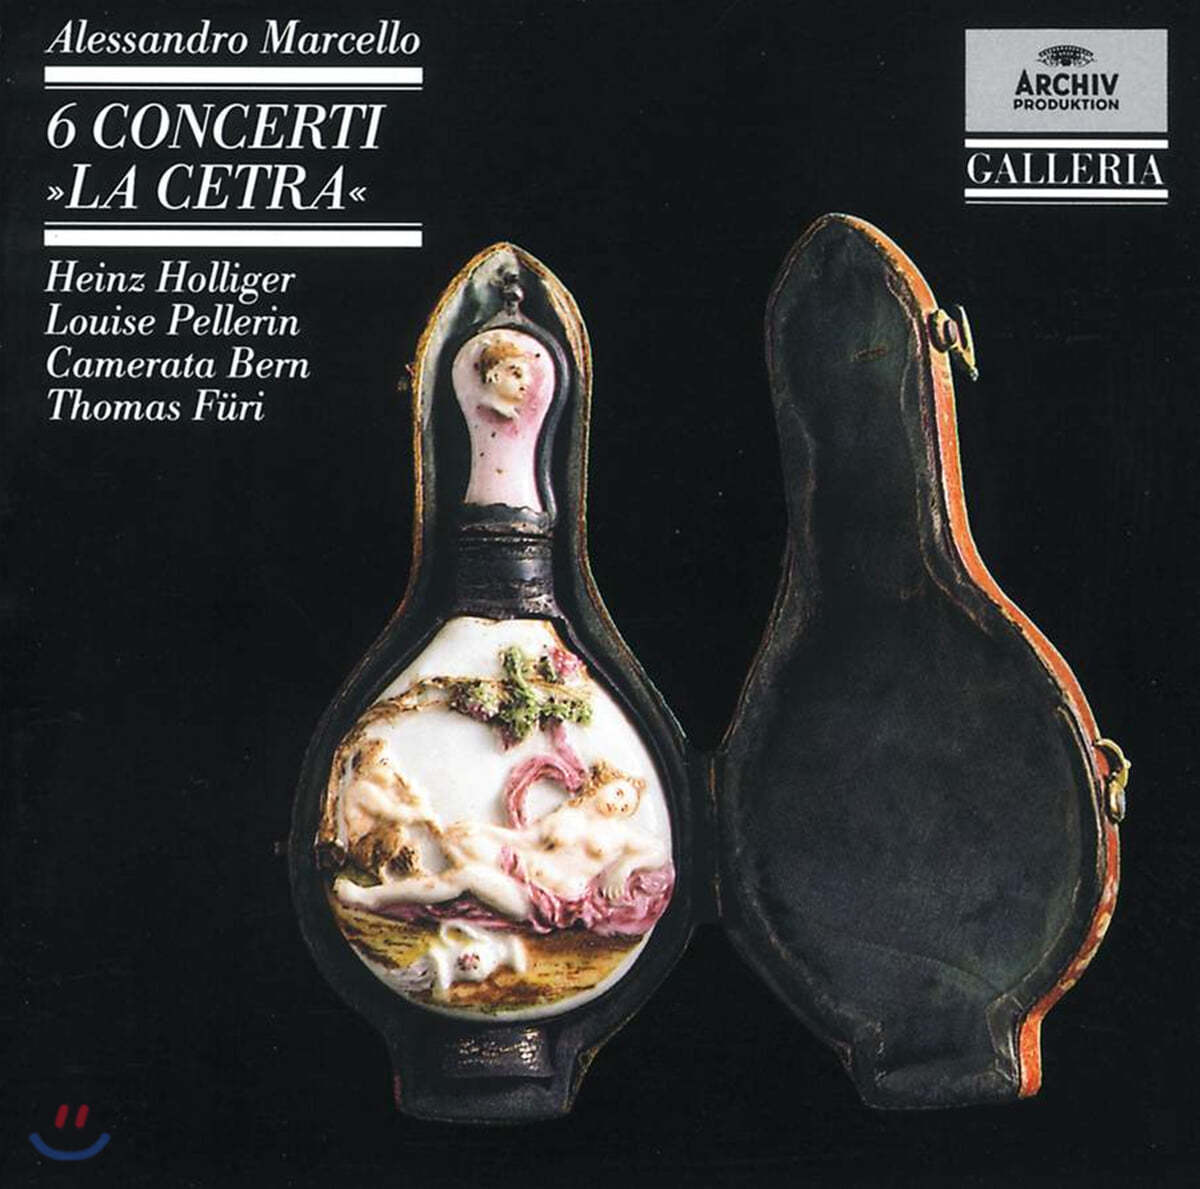 Heinz Holliger / Louise Pellerin 마르첼로: 6개 오보에 협주곡 (Marcello: La Cetra Concertos)